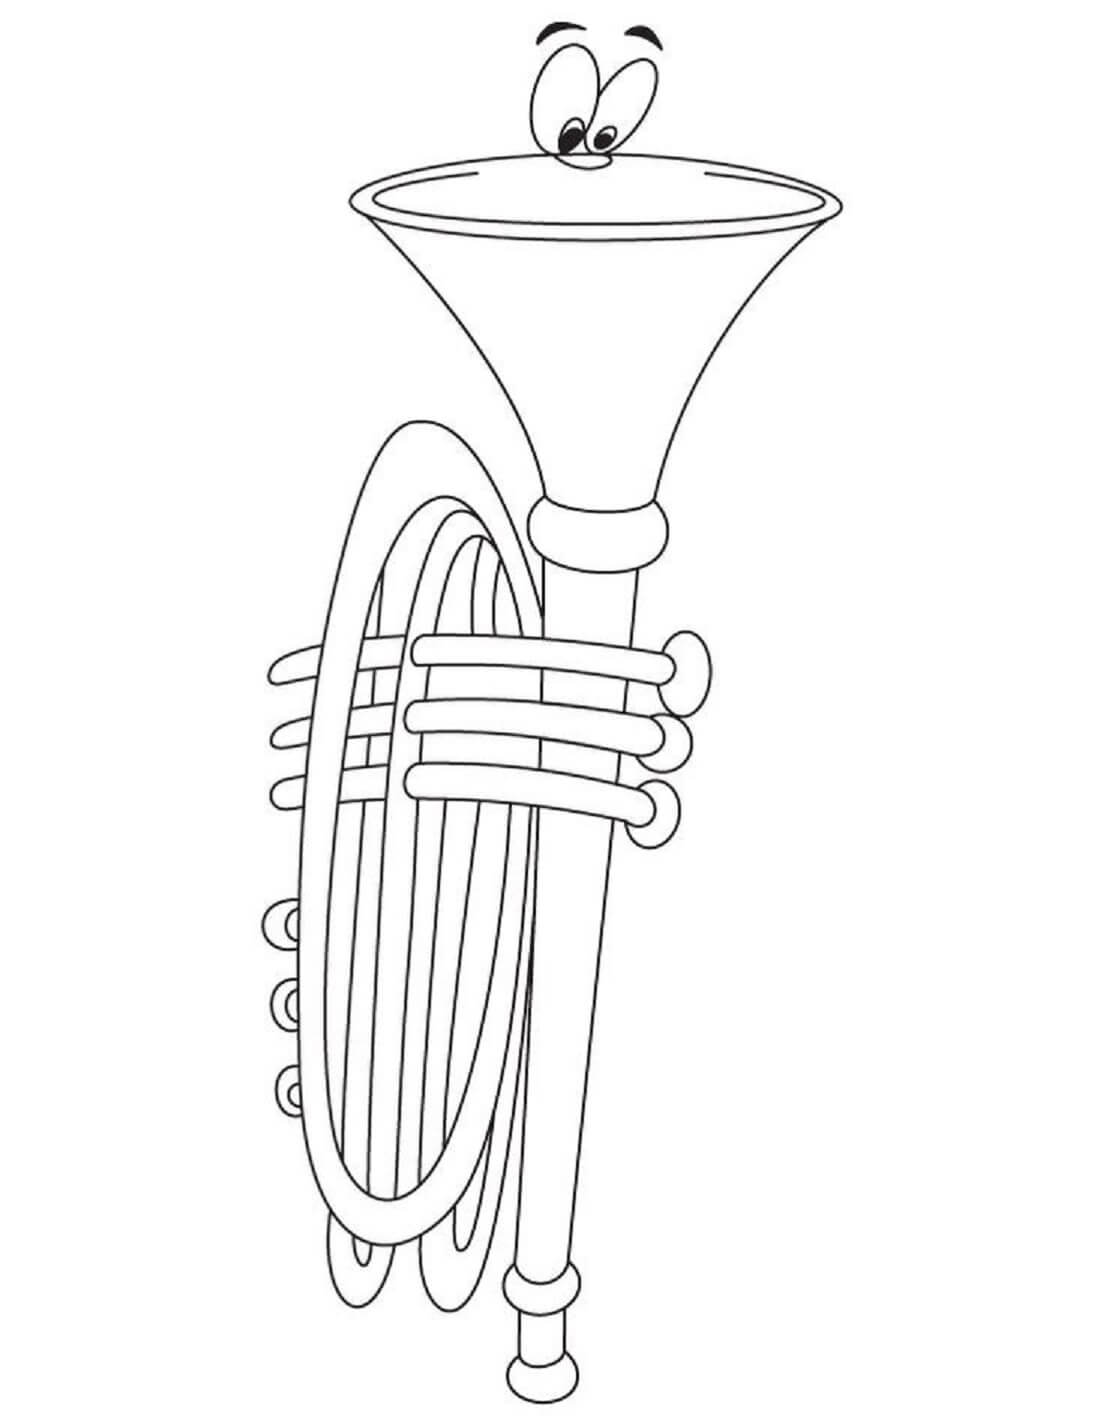 Trompette de Dessin Animé coloring page